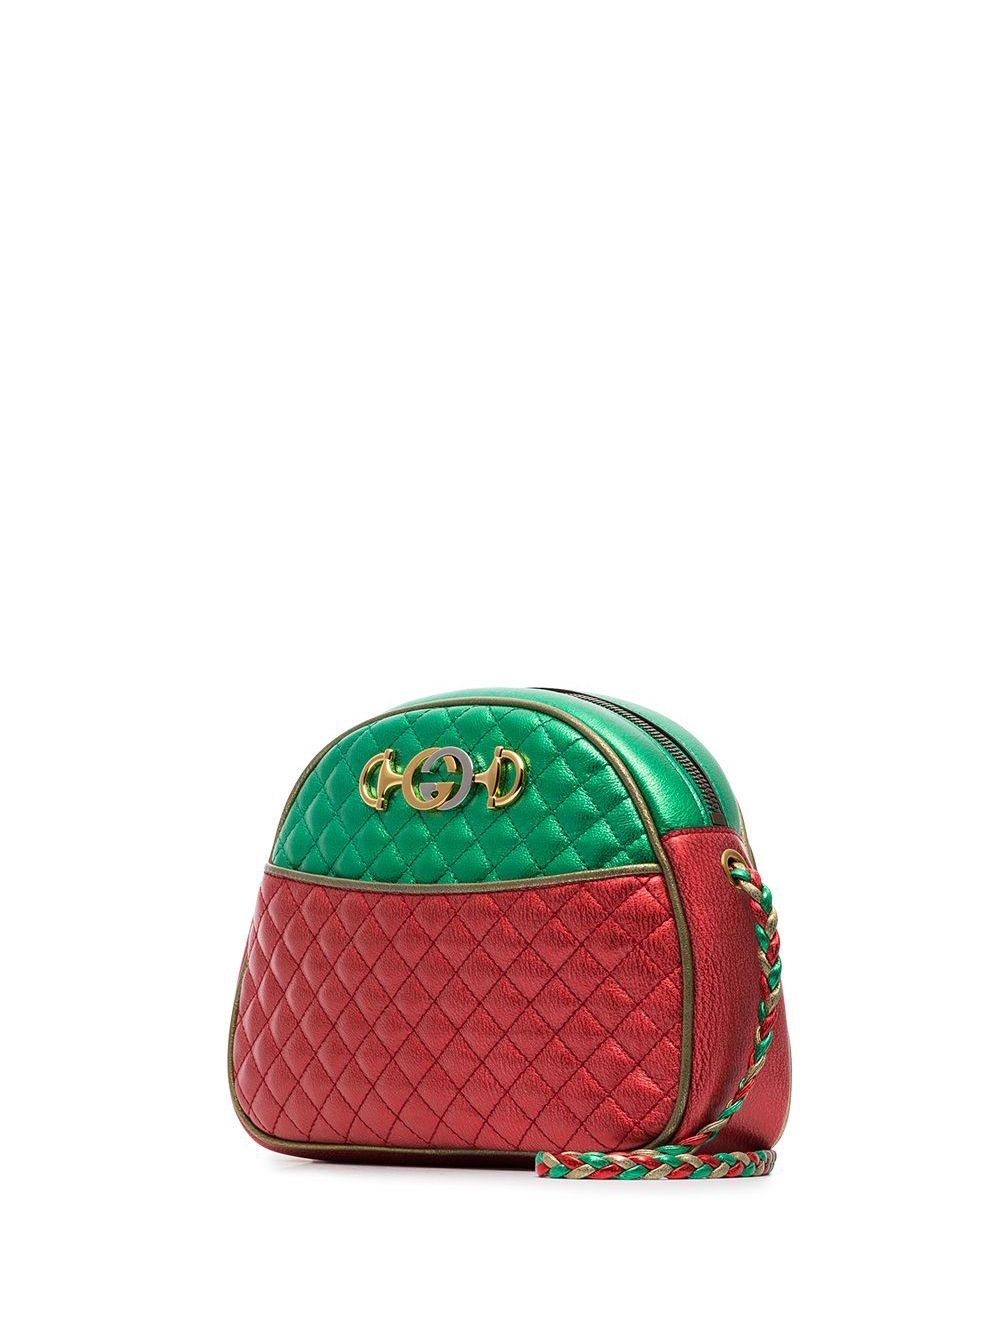 GUCCI Pre-Loved Trapuntata Handbag Red - MAISONDEFASHION.COM